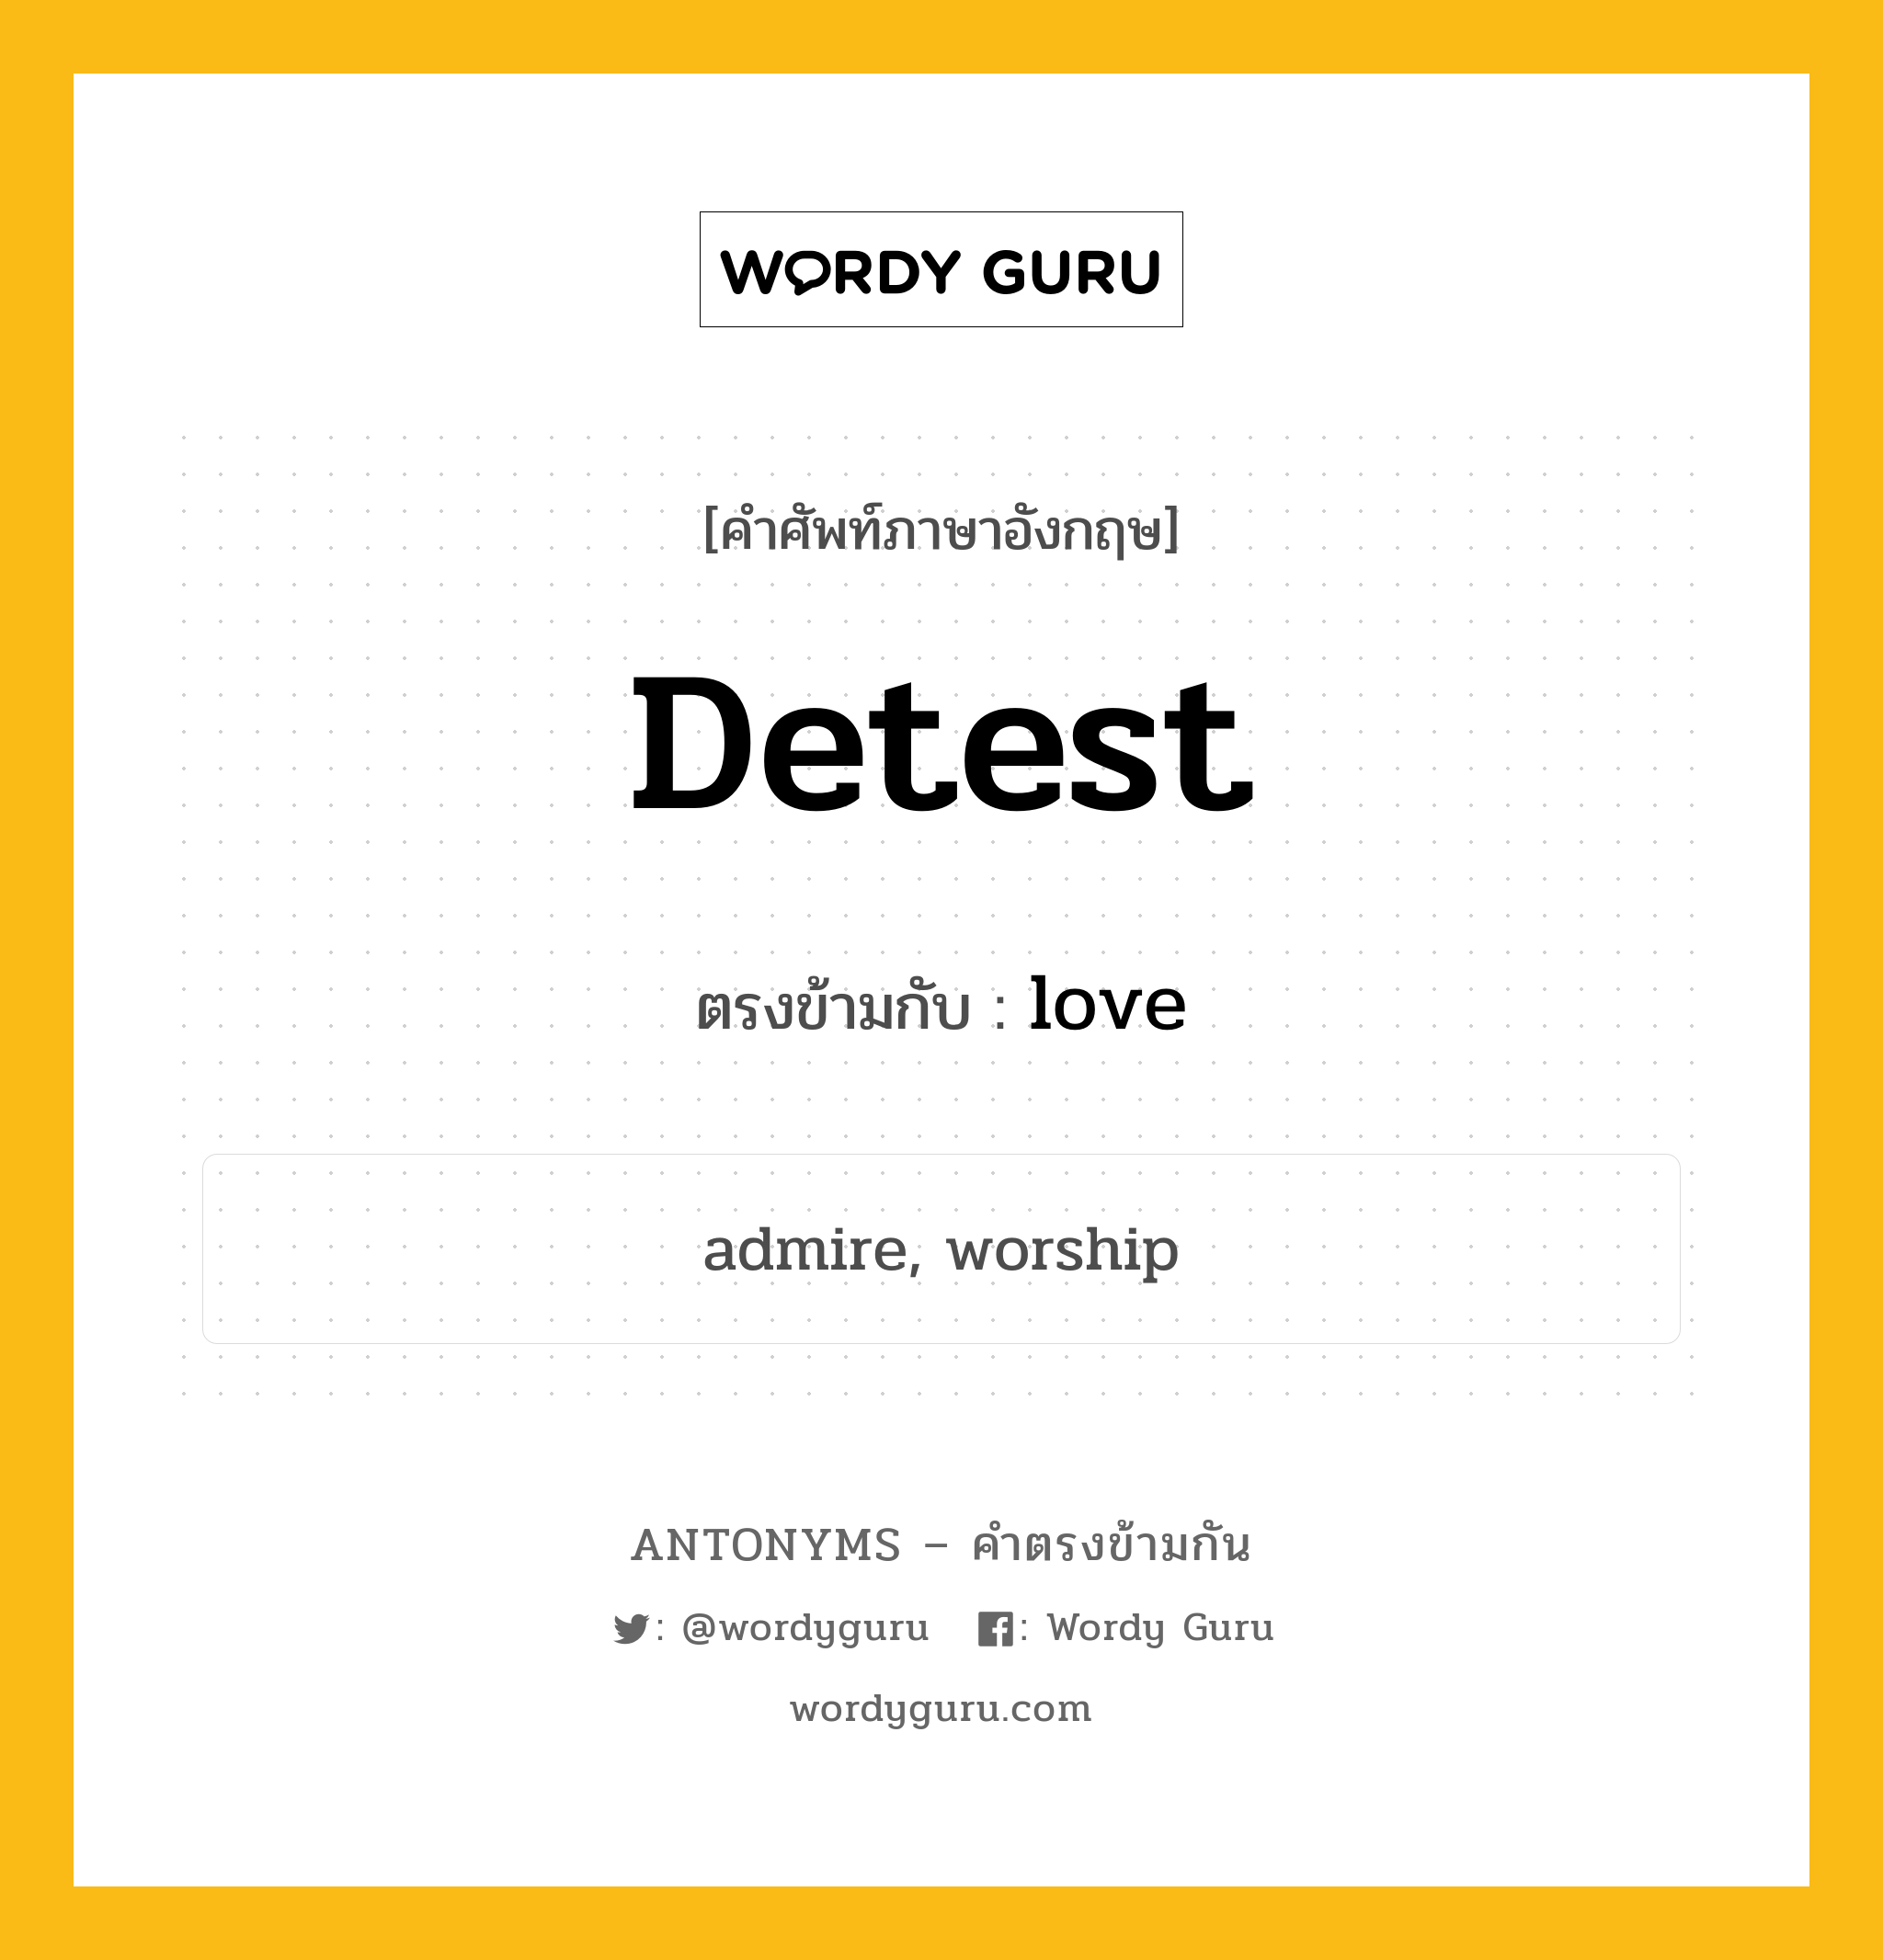 detest เป็นคำตรงข้ามกับคำไหนบ้าง?, คำศัพท์ภาษาอังกฤษ detest ตรงข้ามกับ love หมวด love